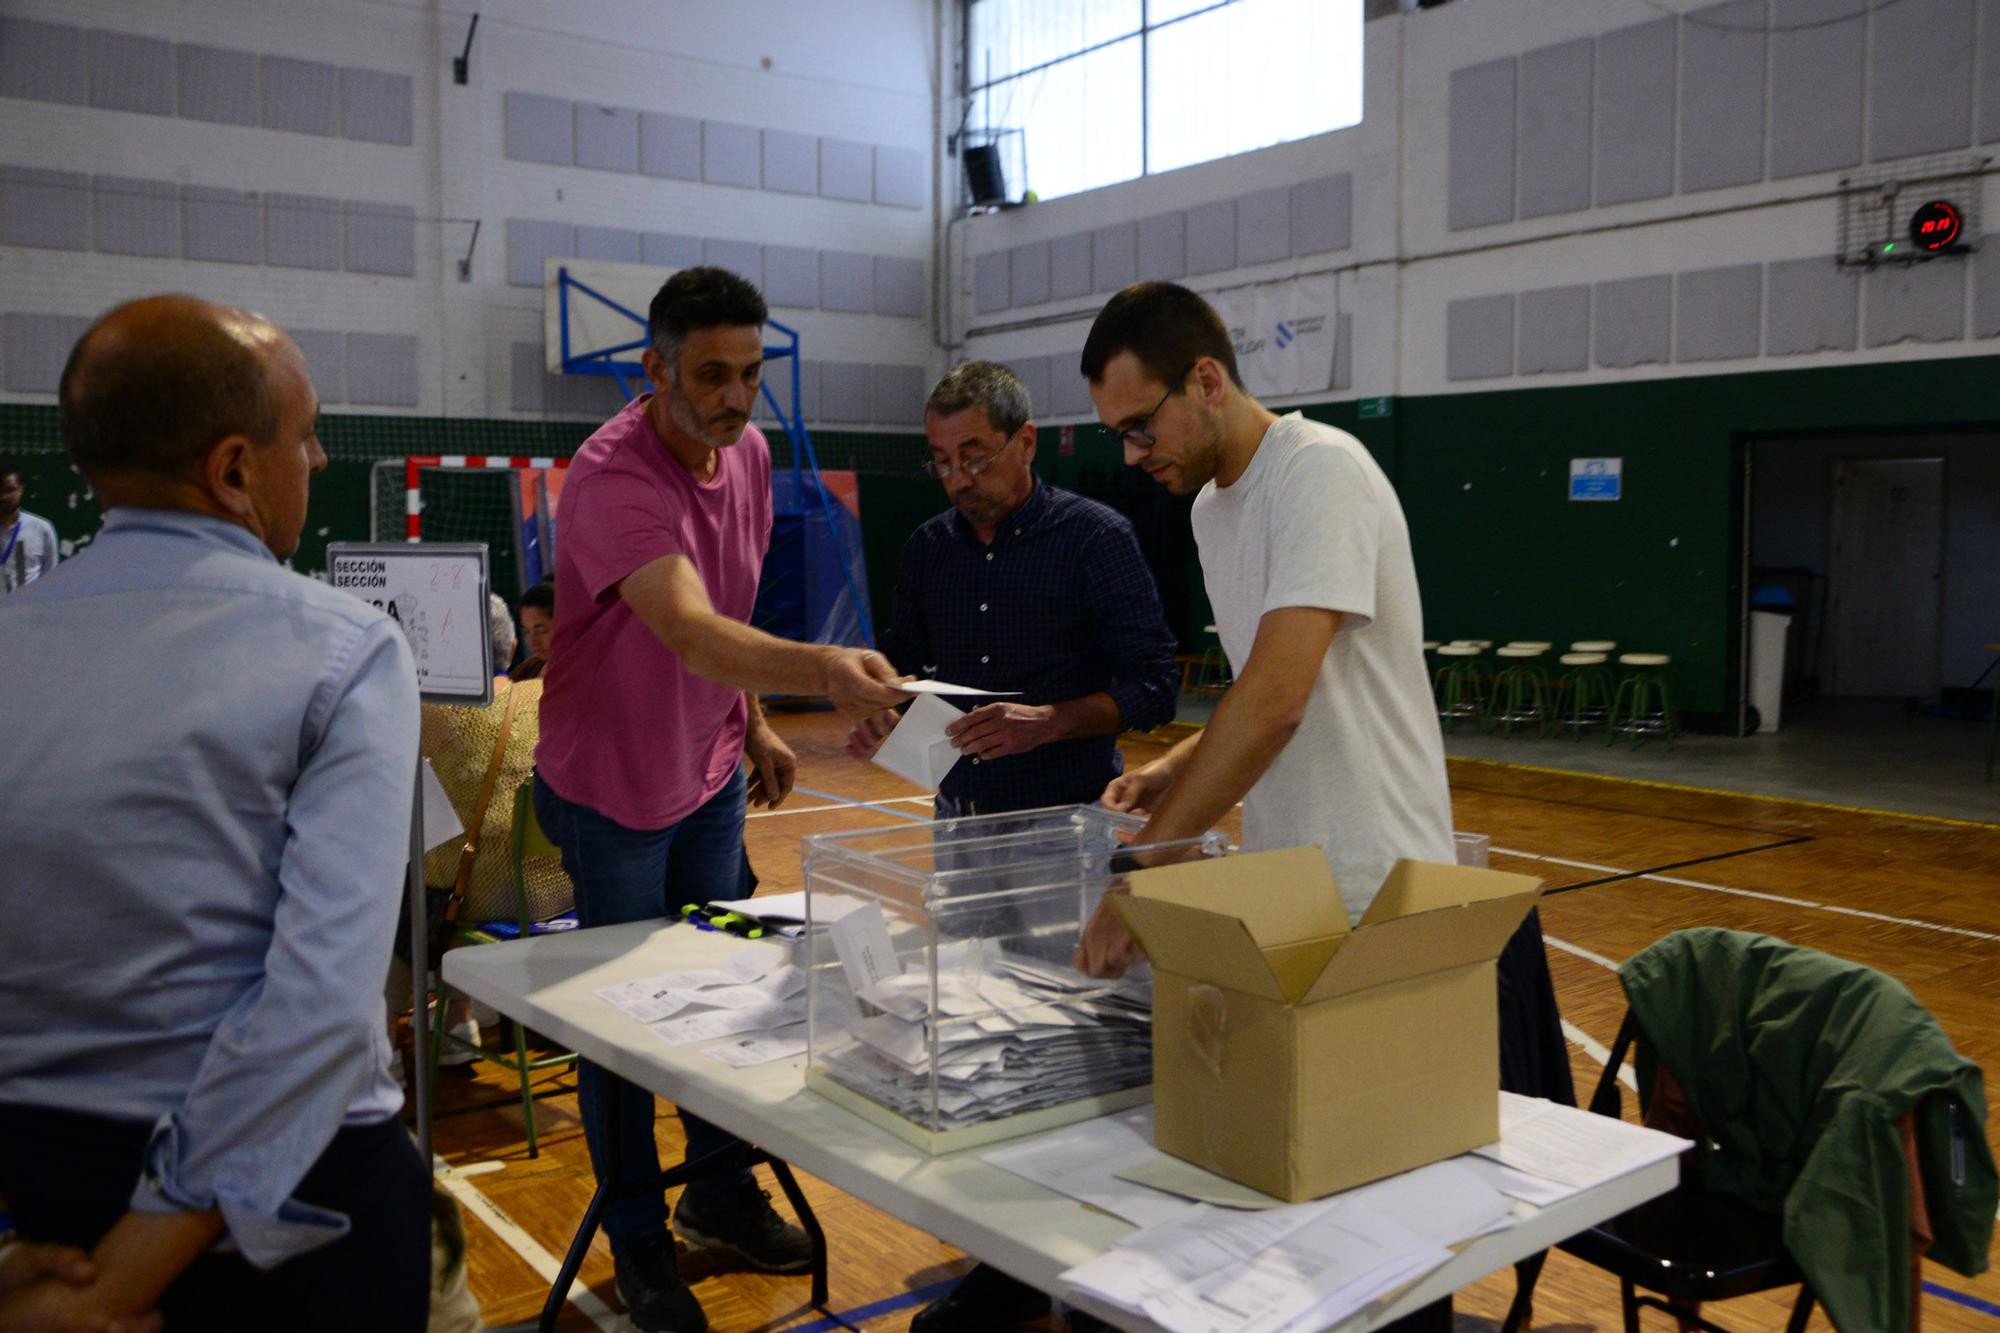 Las mejores imágenes de la jornada electoral en O Morrazo